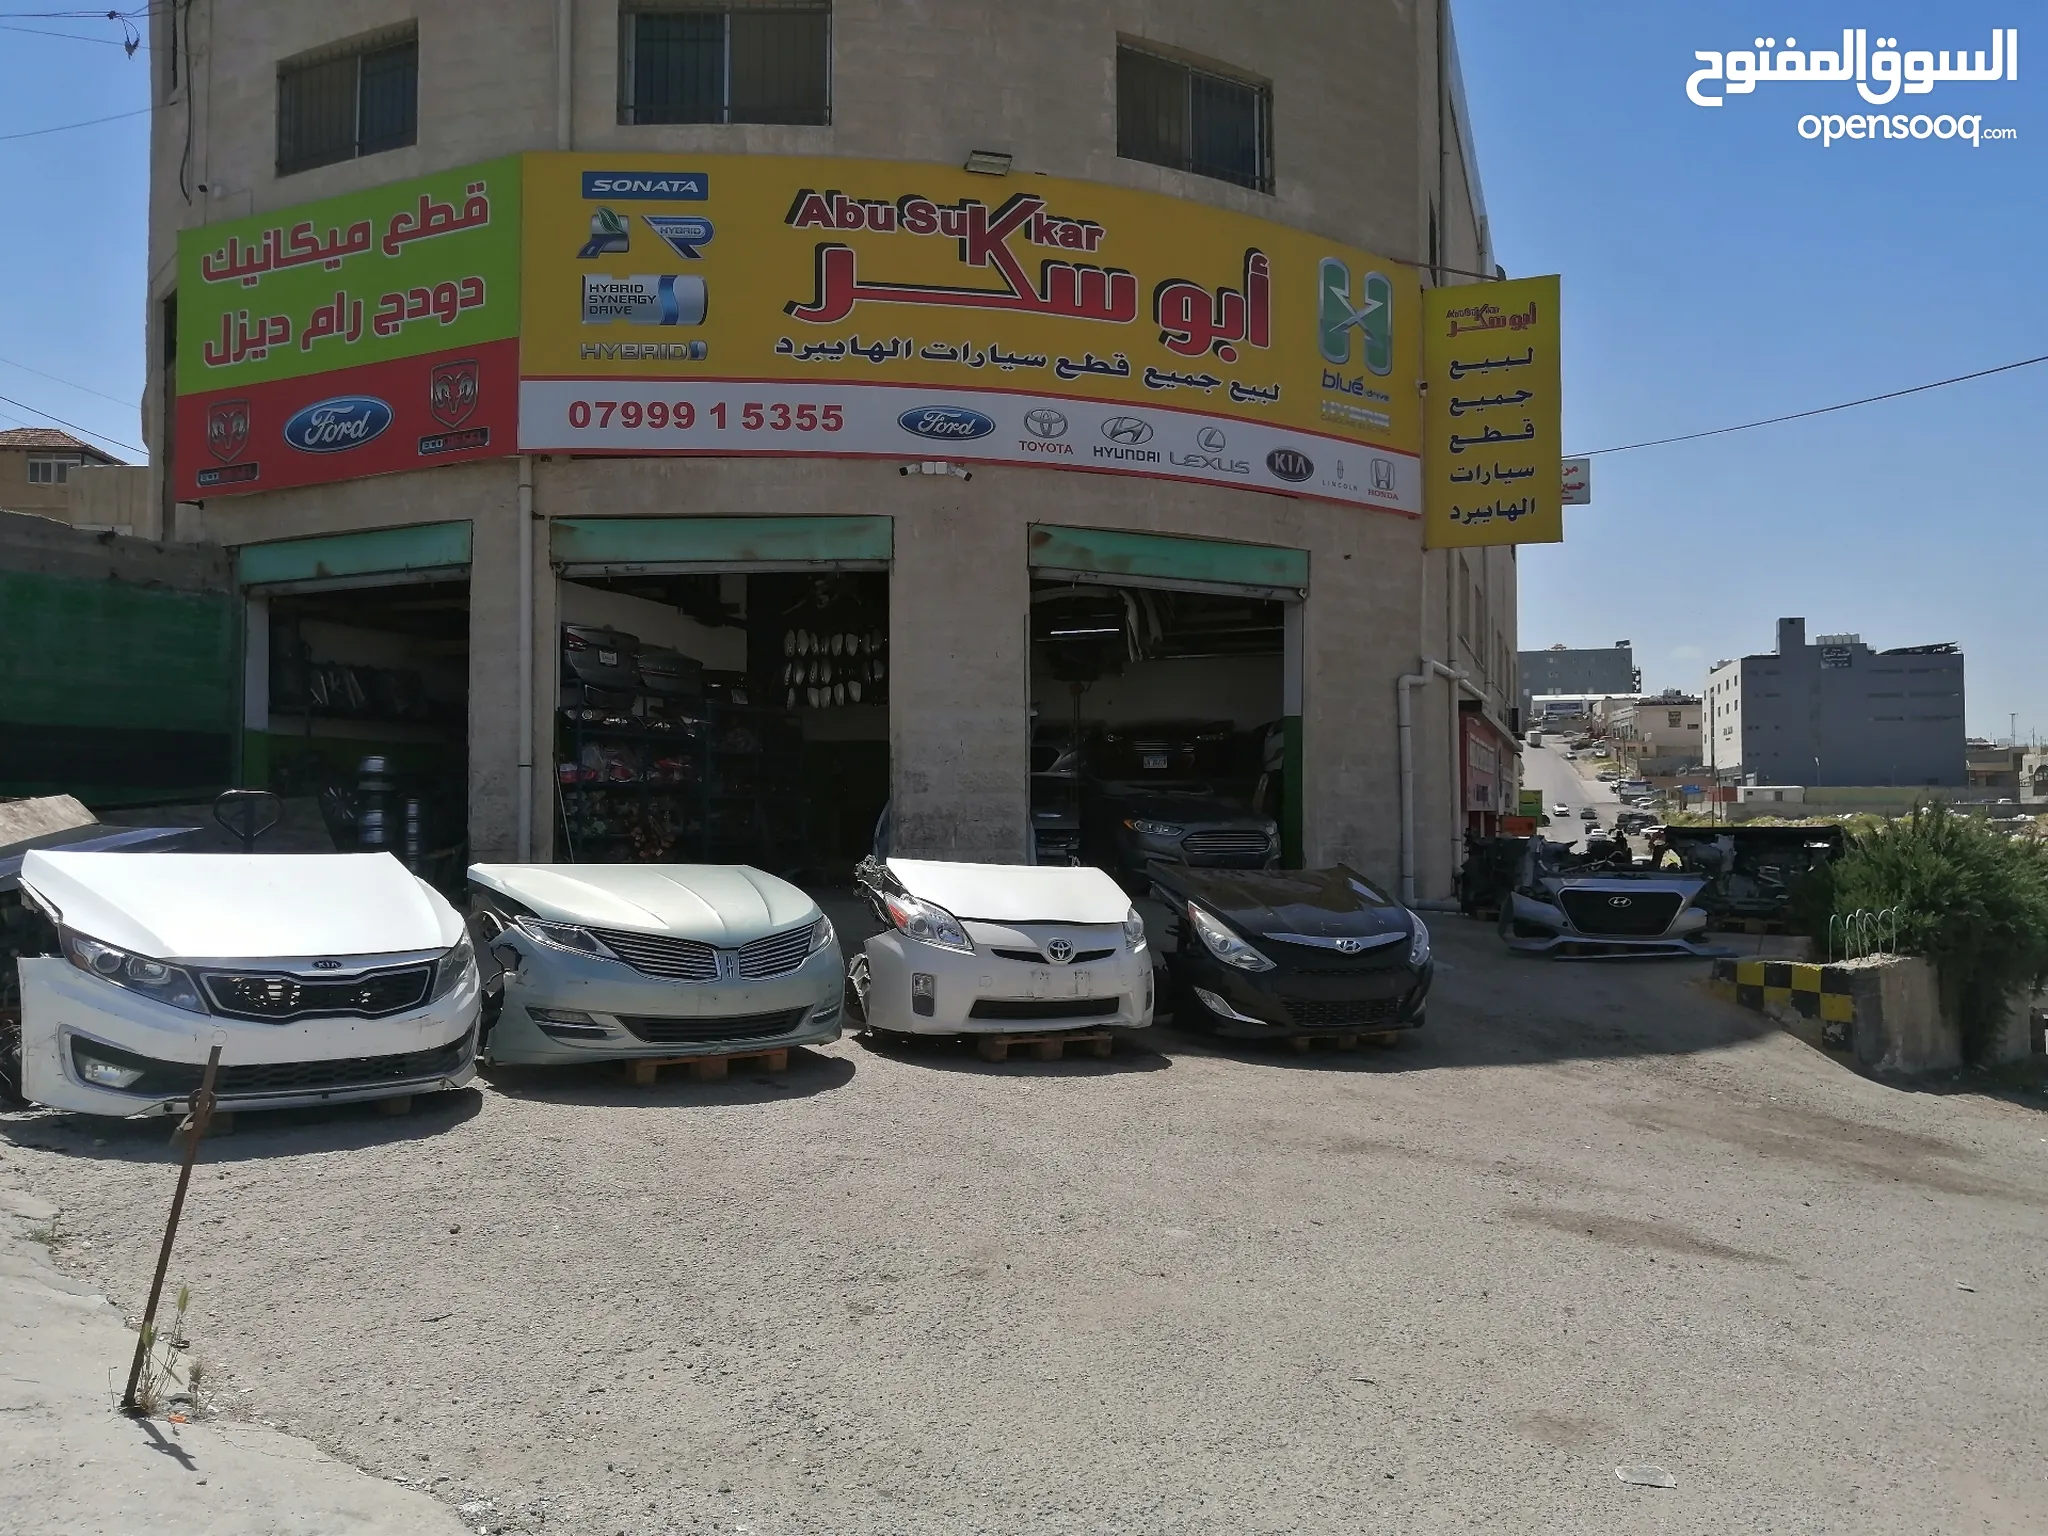 سيارات ومركبات : قطع غيار السيارات : أخرى أخرى : (صفحة 3) : عمان | السوق  المفتوح